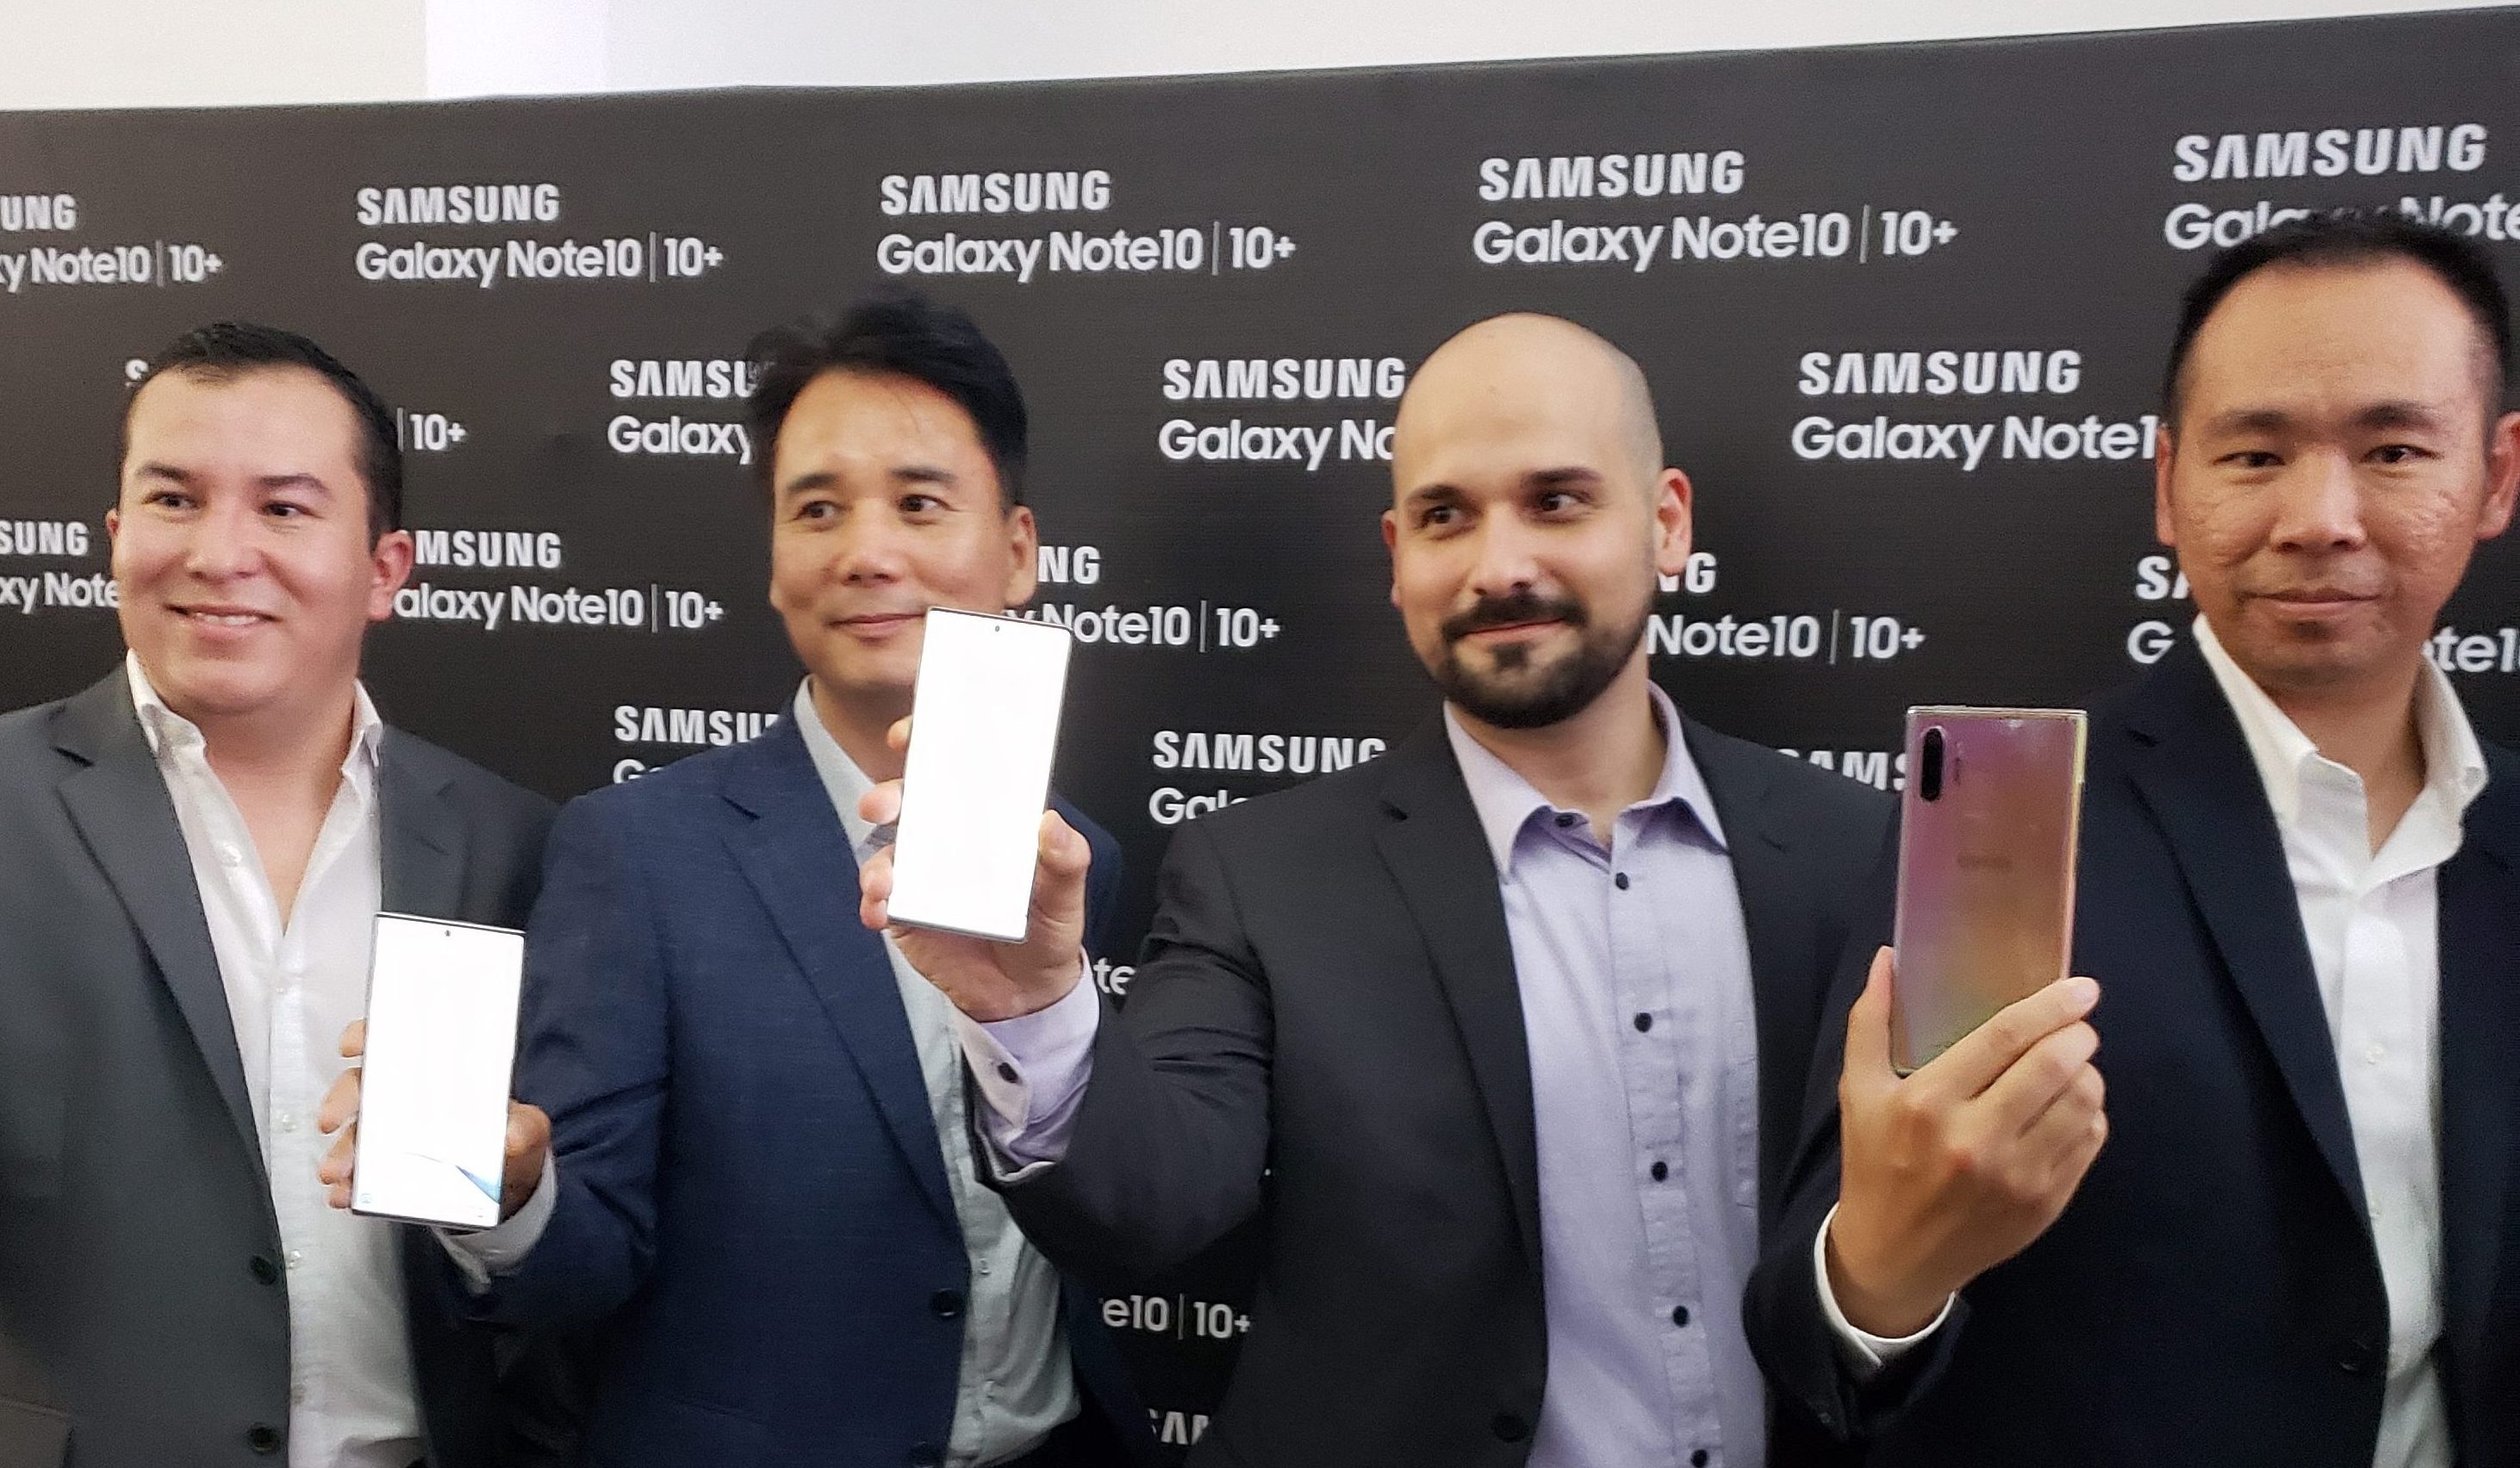 новый Galaxy Note10 прибывает в Гватемалу - Samsung Newsroom Латинская Америка